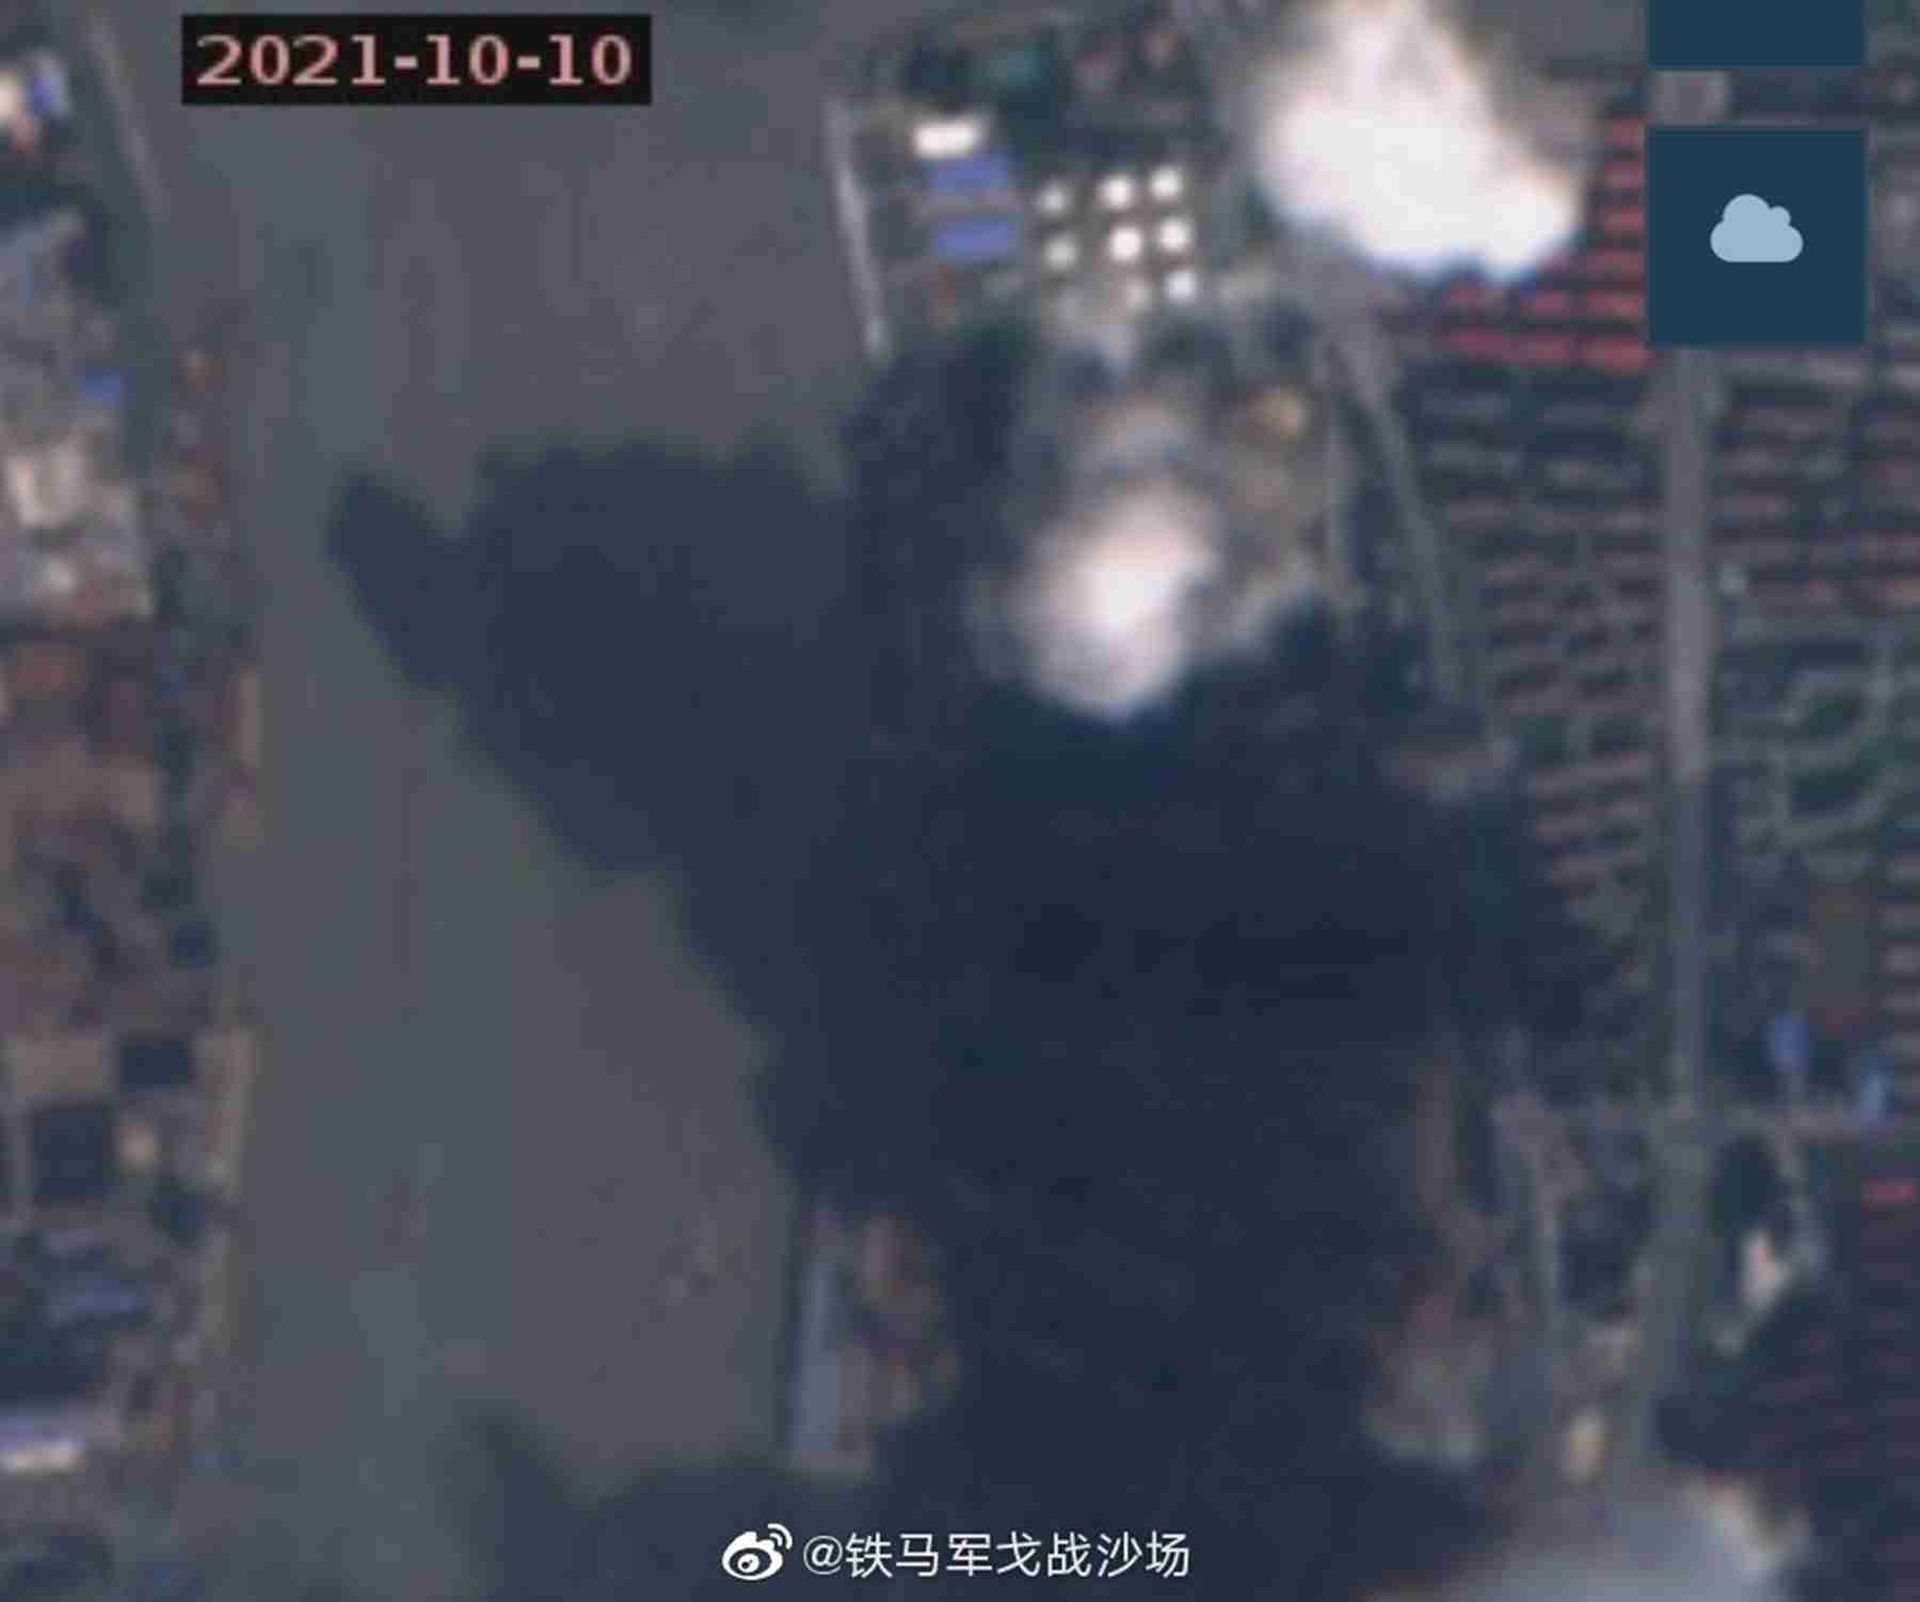 075三号舰最新卫星照。这是拍摄于10月10日的卫星照。（微博@铁马军戈战沙场）